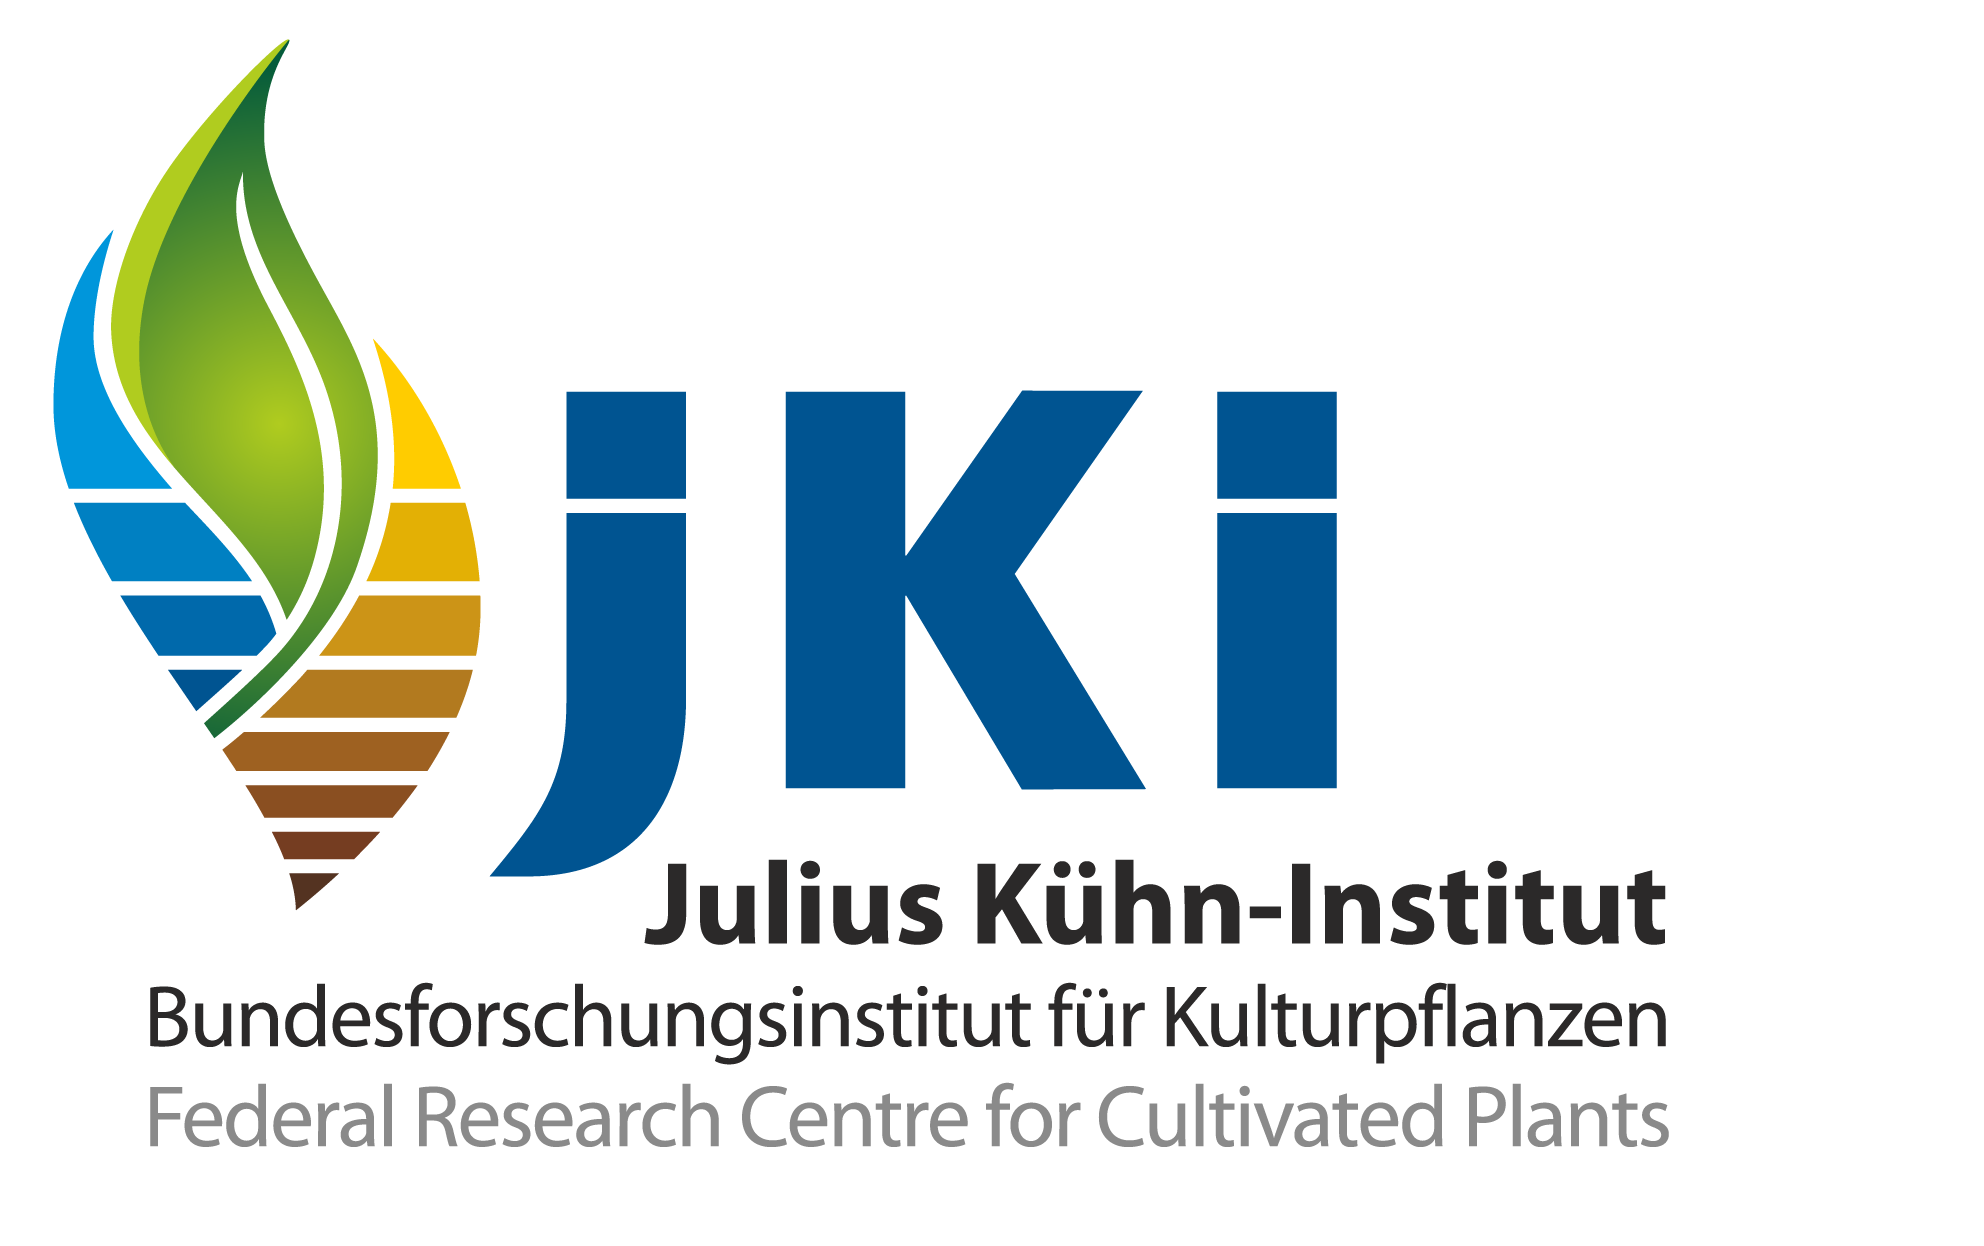 Julius Kuehn Institute logo